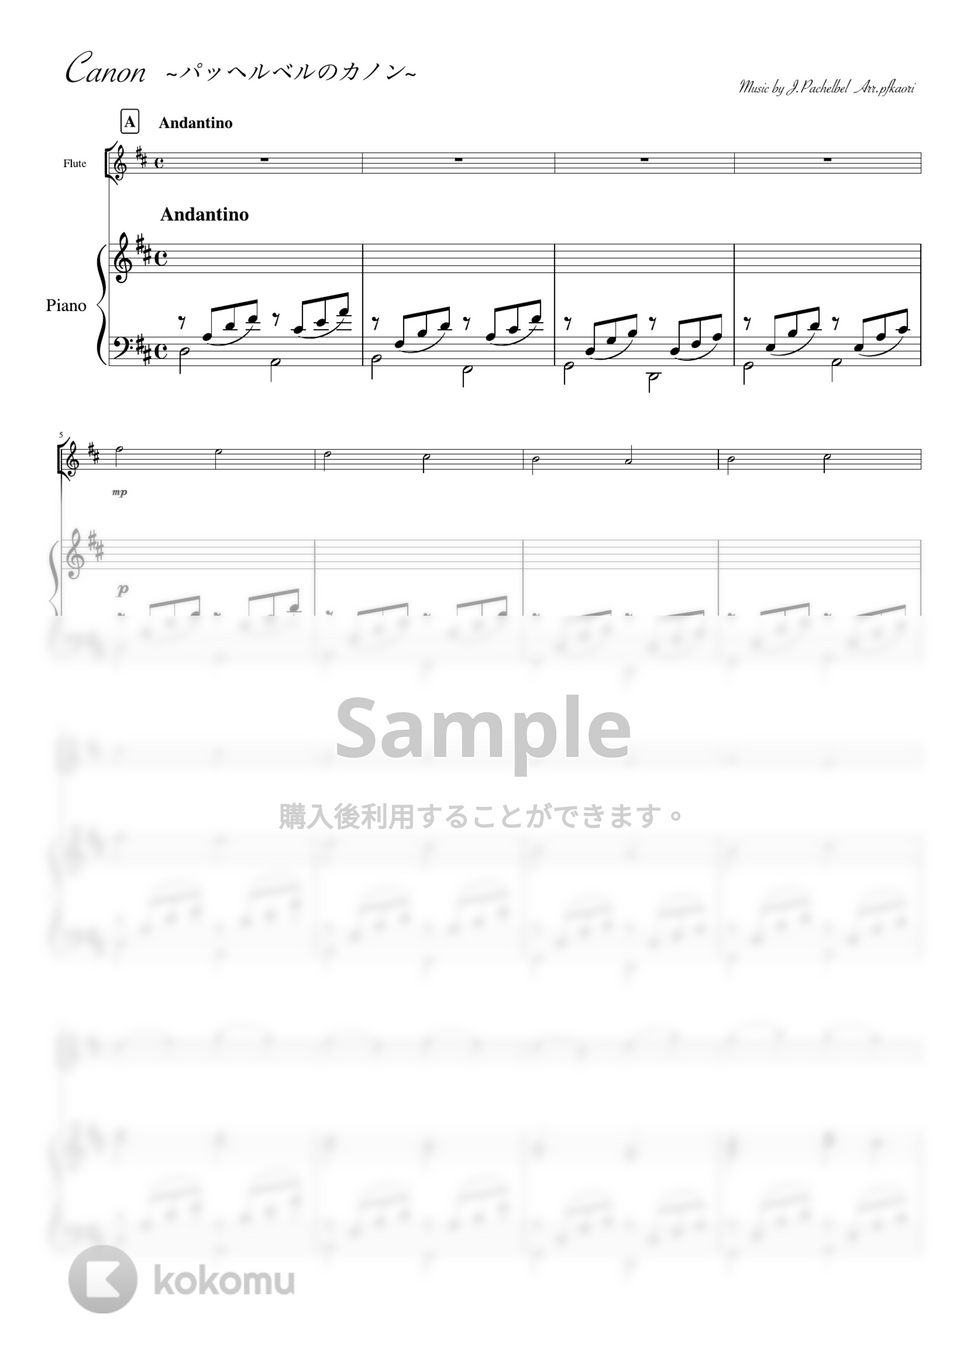 パッヘルベル - カノン (Ddur・フルート&ピアノ) by pfkaori